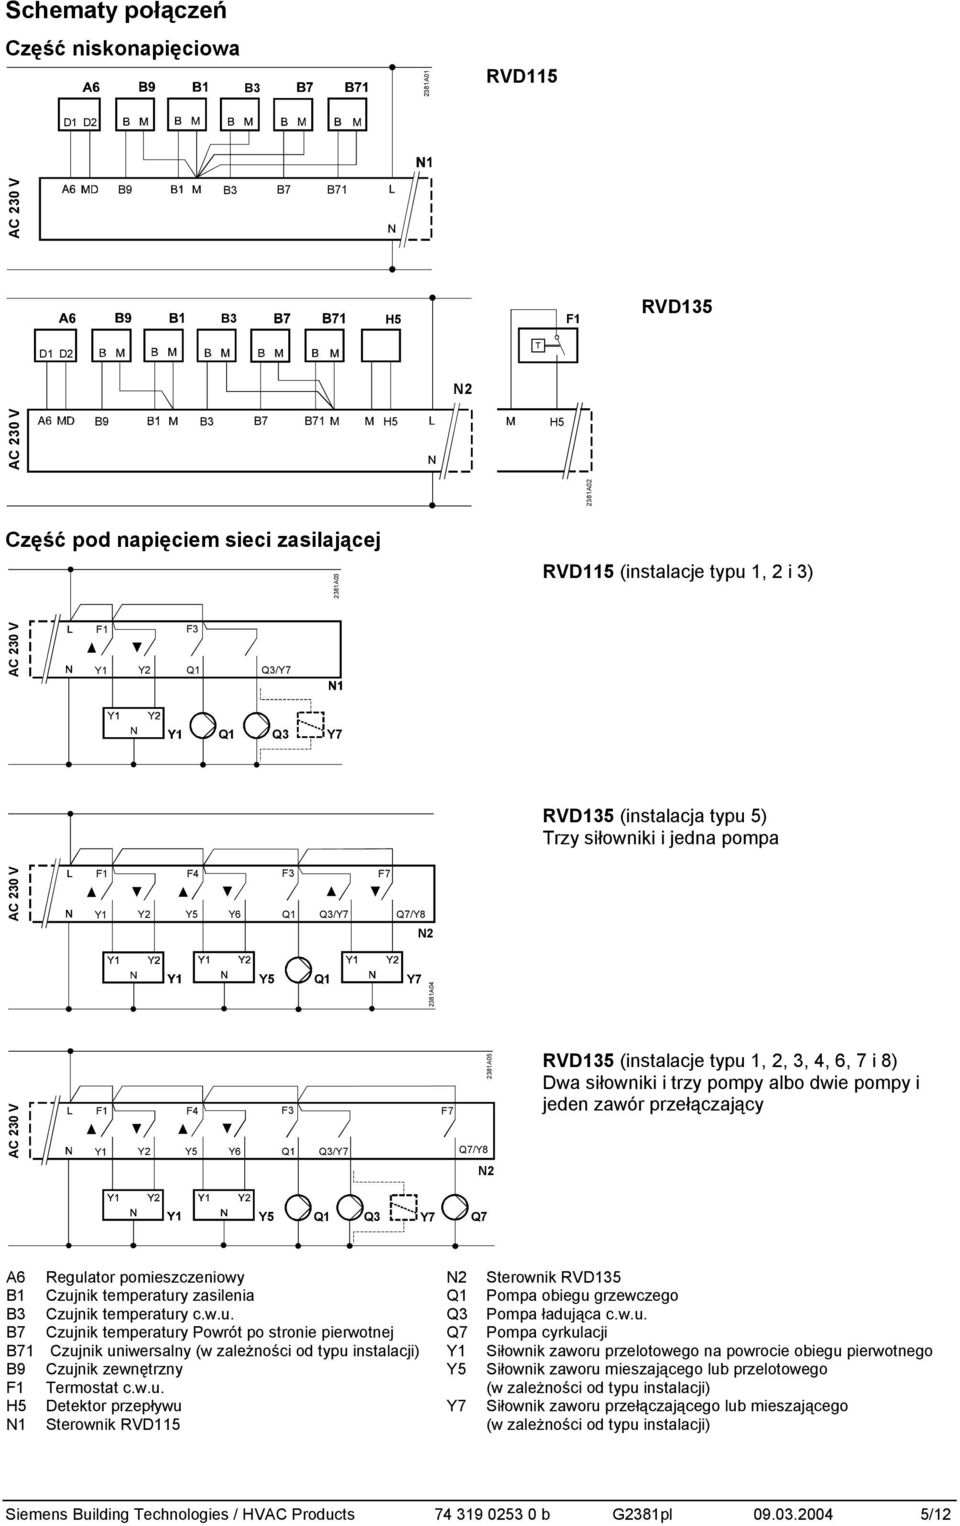 Q7/Y8 N2 RVD135 (instalacje typu 1, 2, 3, 4, 6, 7 i 8) Dwa siłowniki i trzy pompy albo dwie pompy i jeden zawór przełączający Y5 Q3 Y7 Q7 Regulator pomieszczeniowy N2 Sterownik RVD135 Czujnik